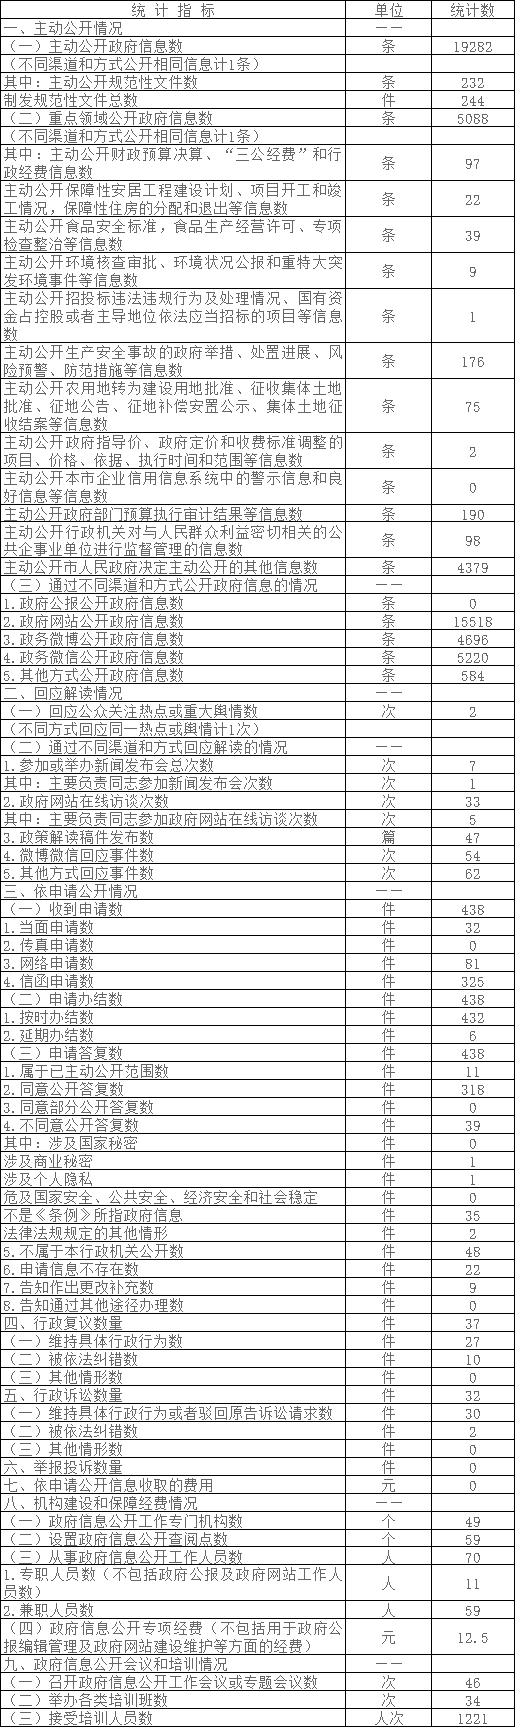 北京市大興區政府信息公開情況統計表(2016年度)